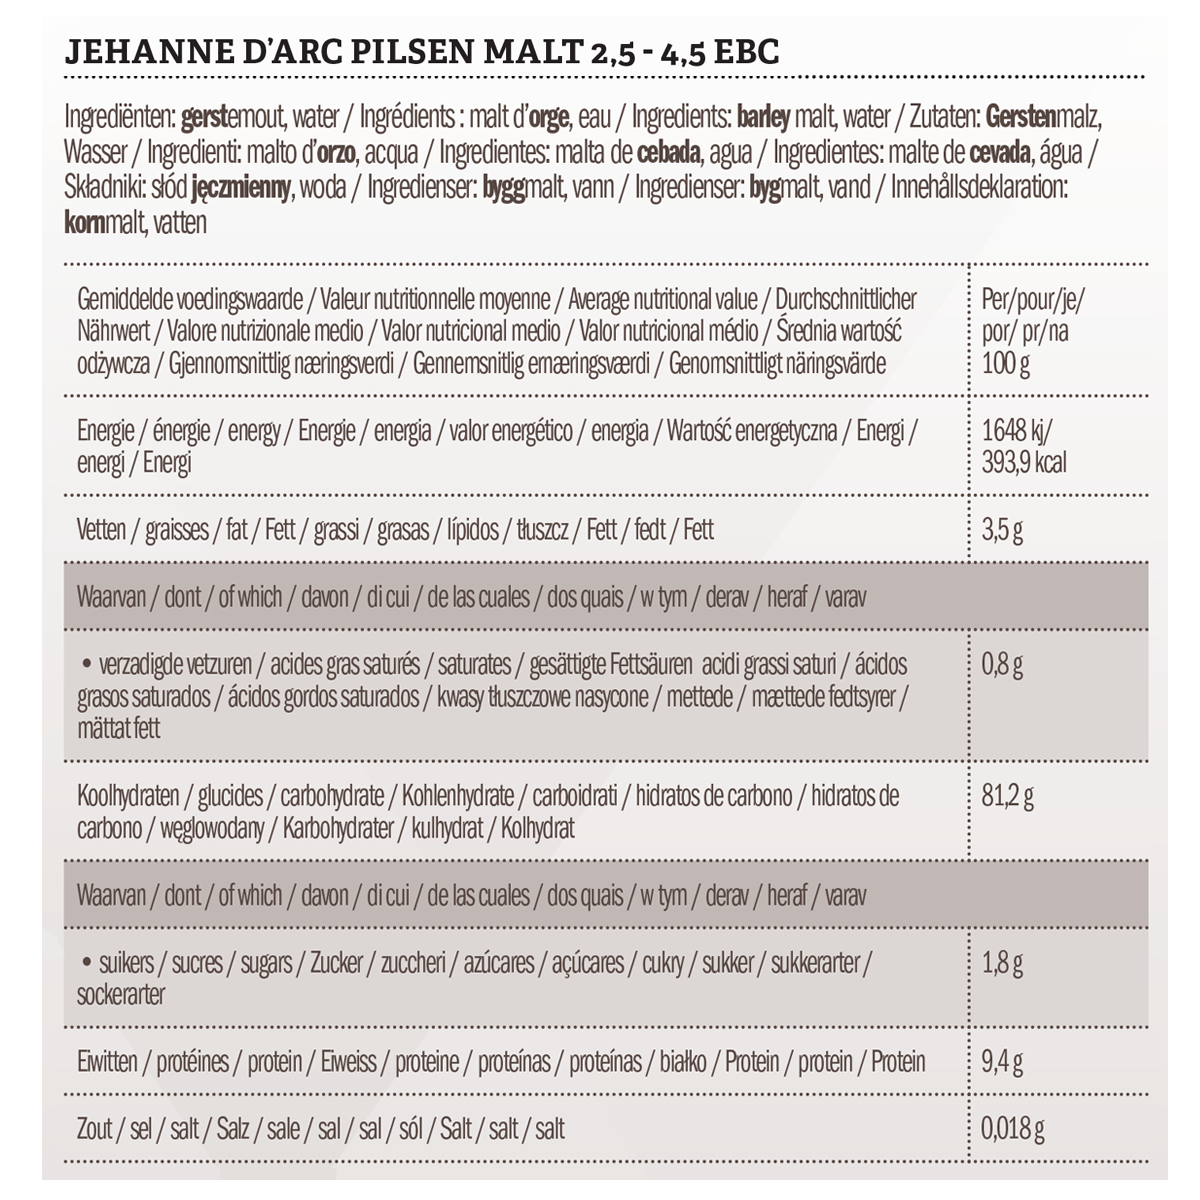 Les Maltiers Jehanne D'Arc Pilsen 2,5 - 4,5 EBC 5 kg